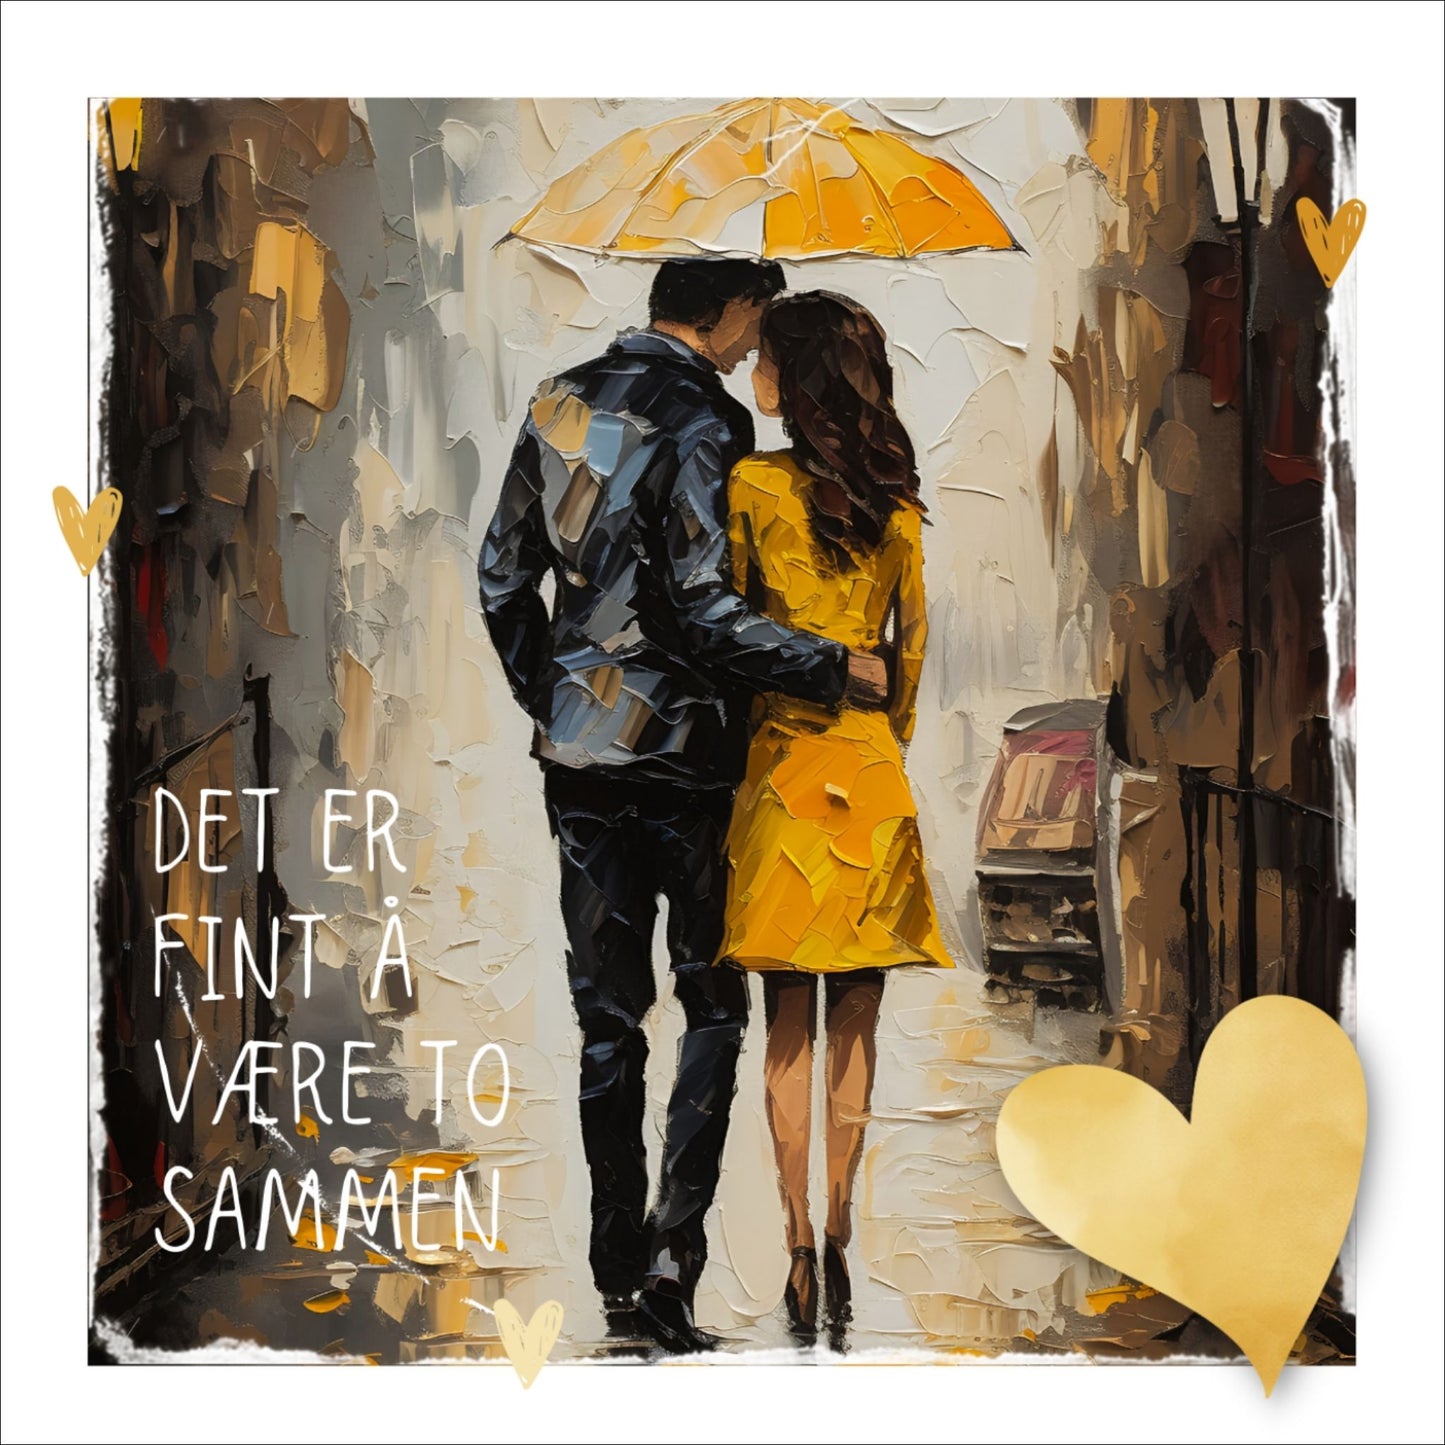 Plakat med lysegult hjerte og tekst "Det er fint å være to sammen" - og et motiv med et kjærestepar som går under en gul paraply. Bildet har en hvit kant på 1,5 cm. 